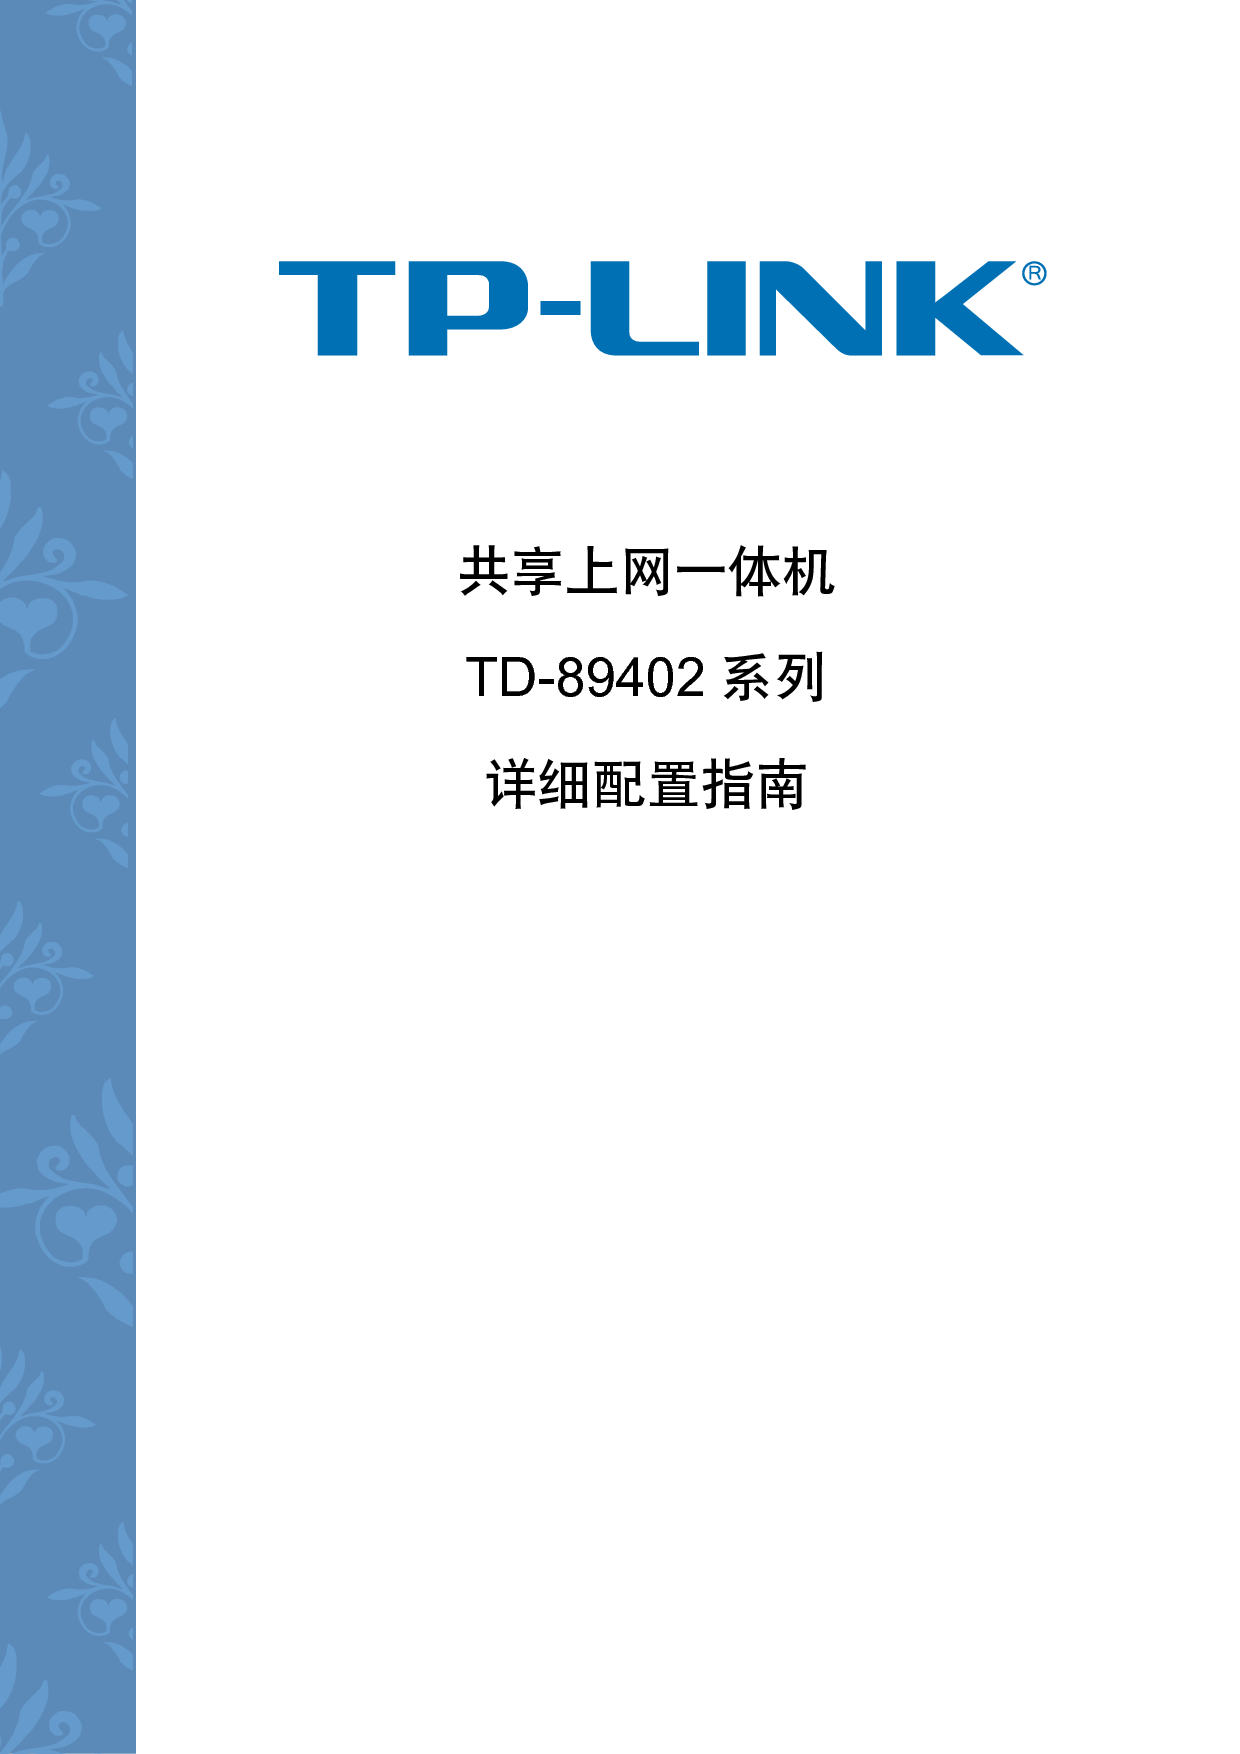 普联 TP-Link TD-89402 第一版 设置指南 封面